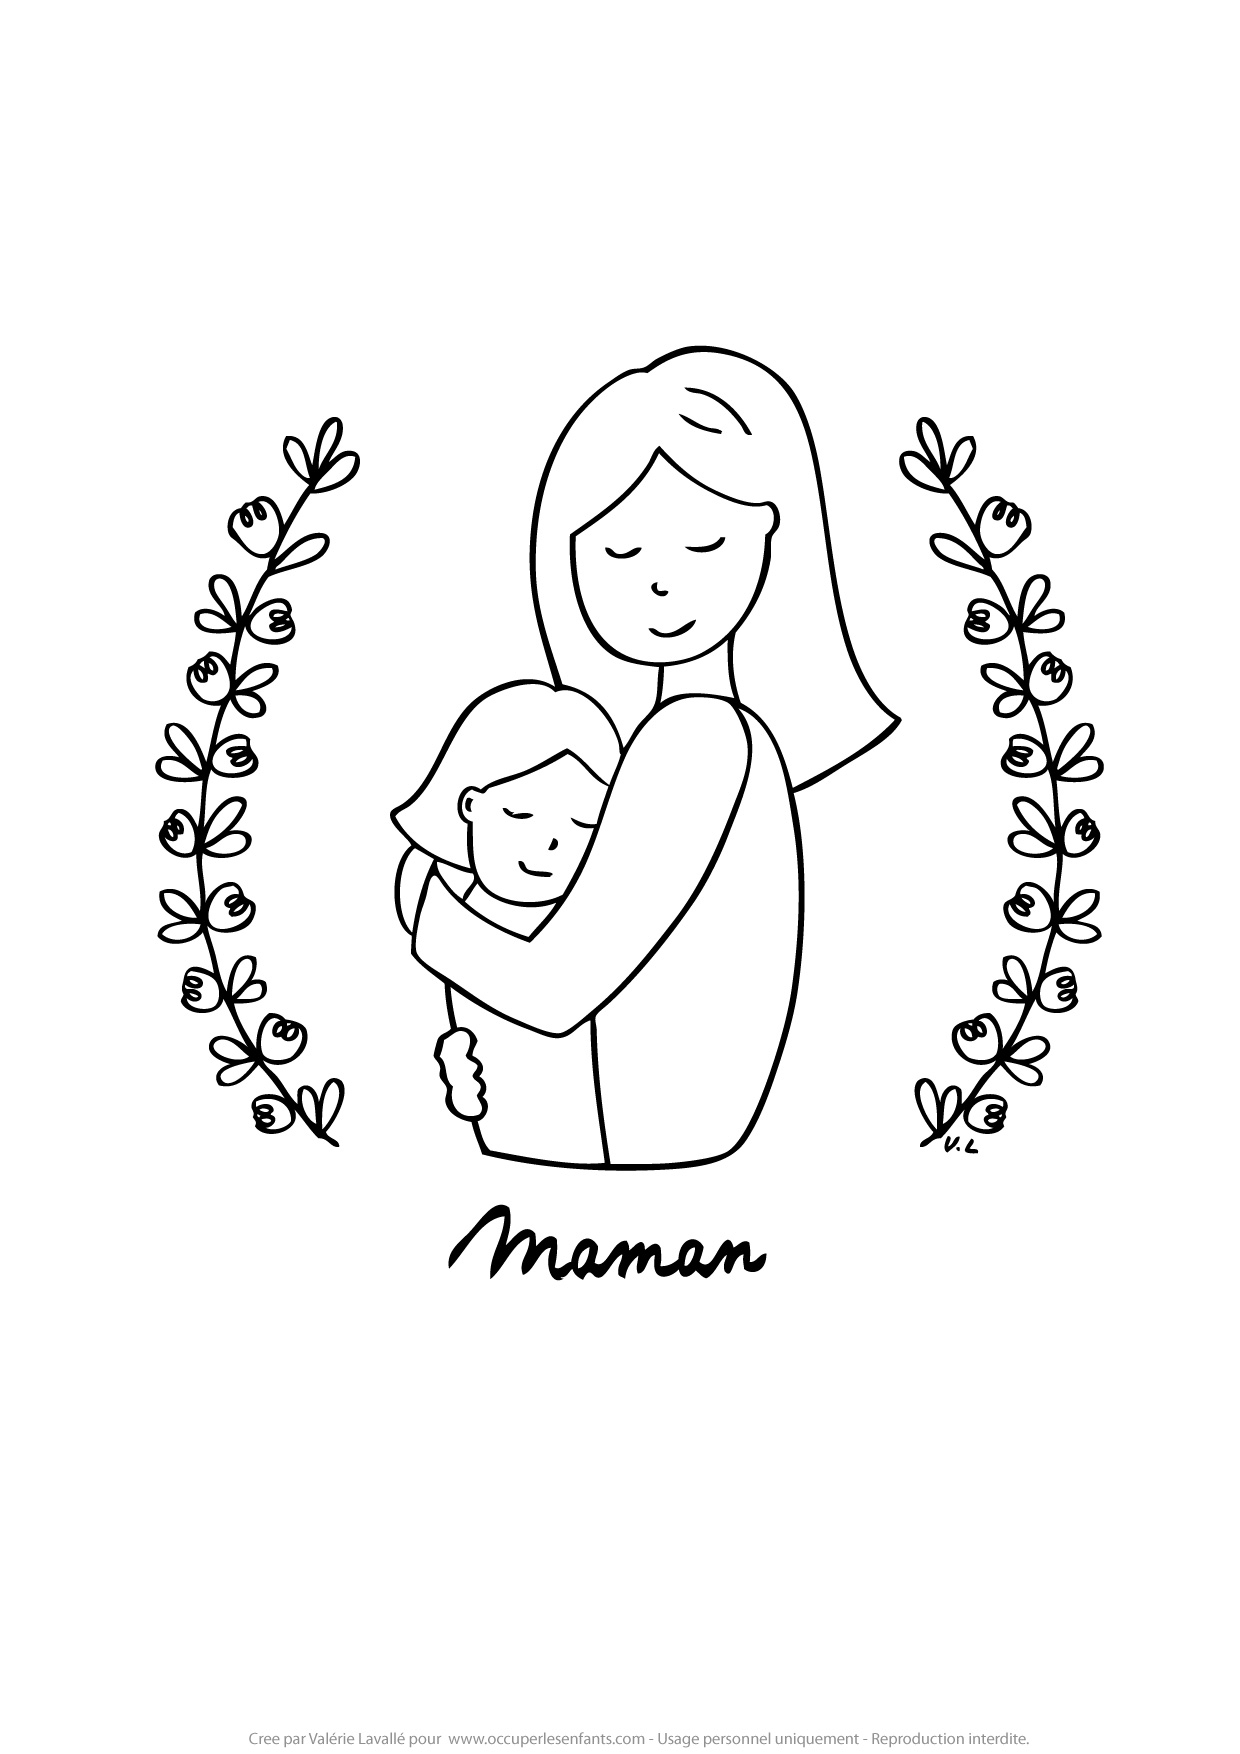 Coloriage Maman Et Sa Fille - Occuper Les Enfants destiné Coloriage De Maman